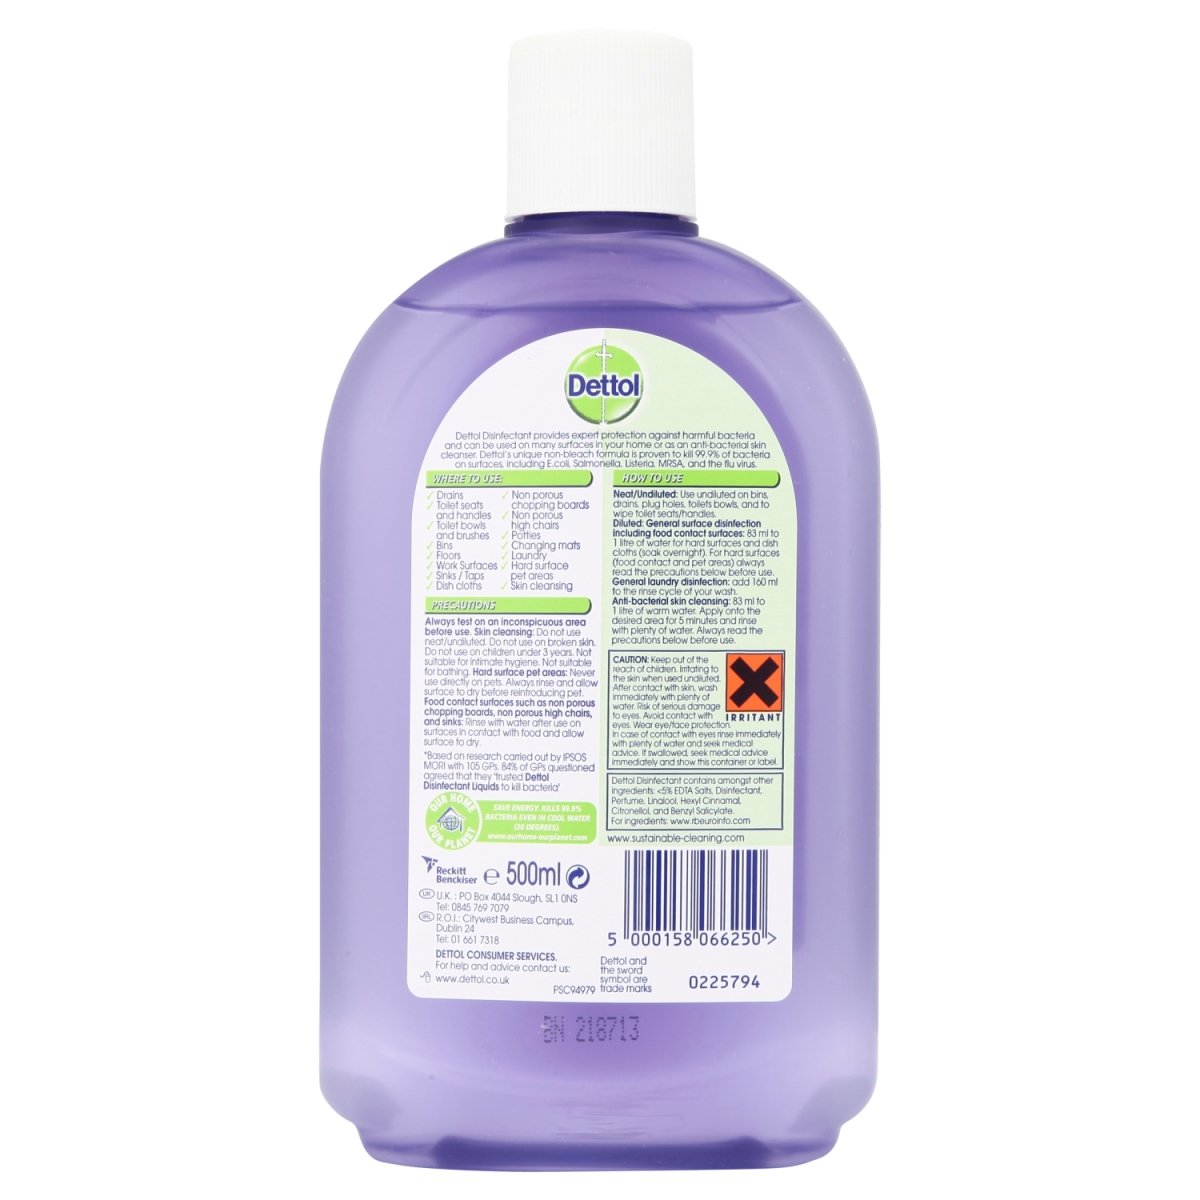 Dettol Disinfectant Lavender & Orange - Intamarque - Wholesale 5000158066250